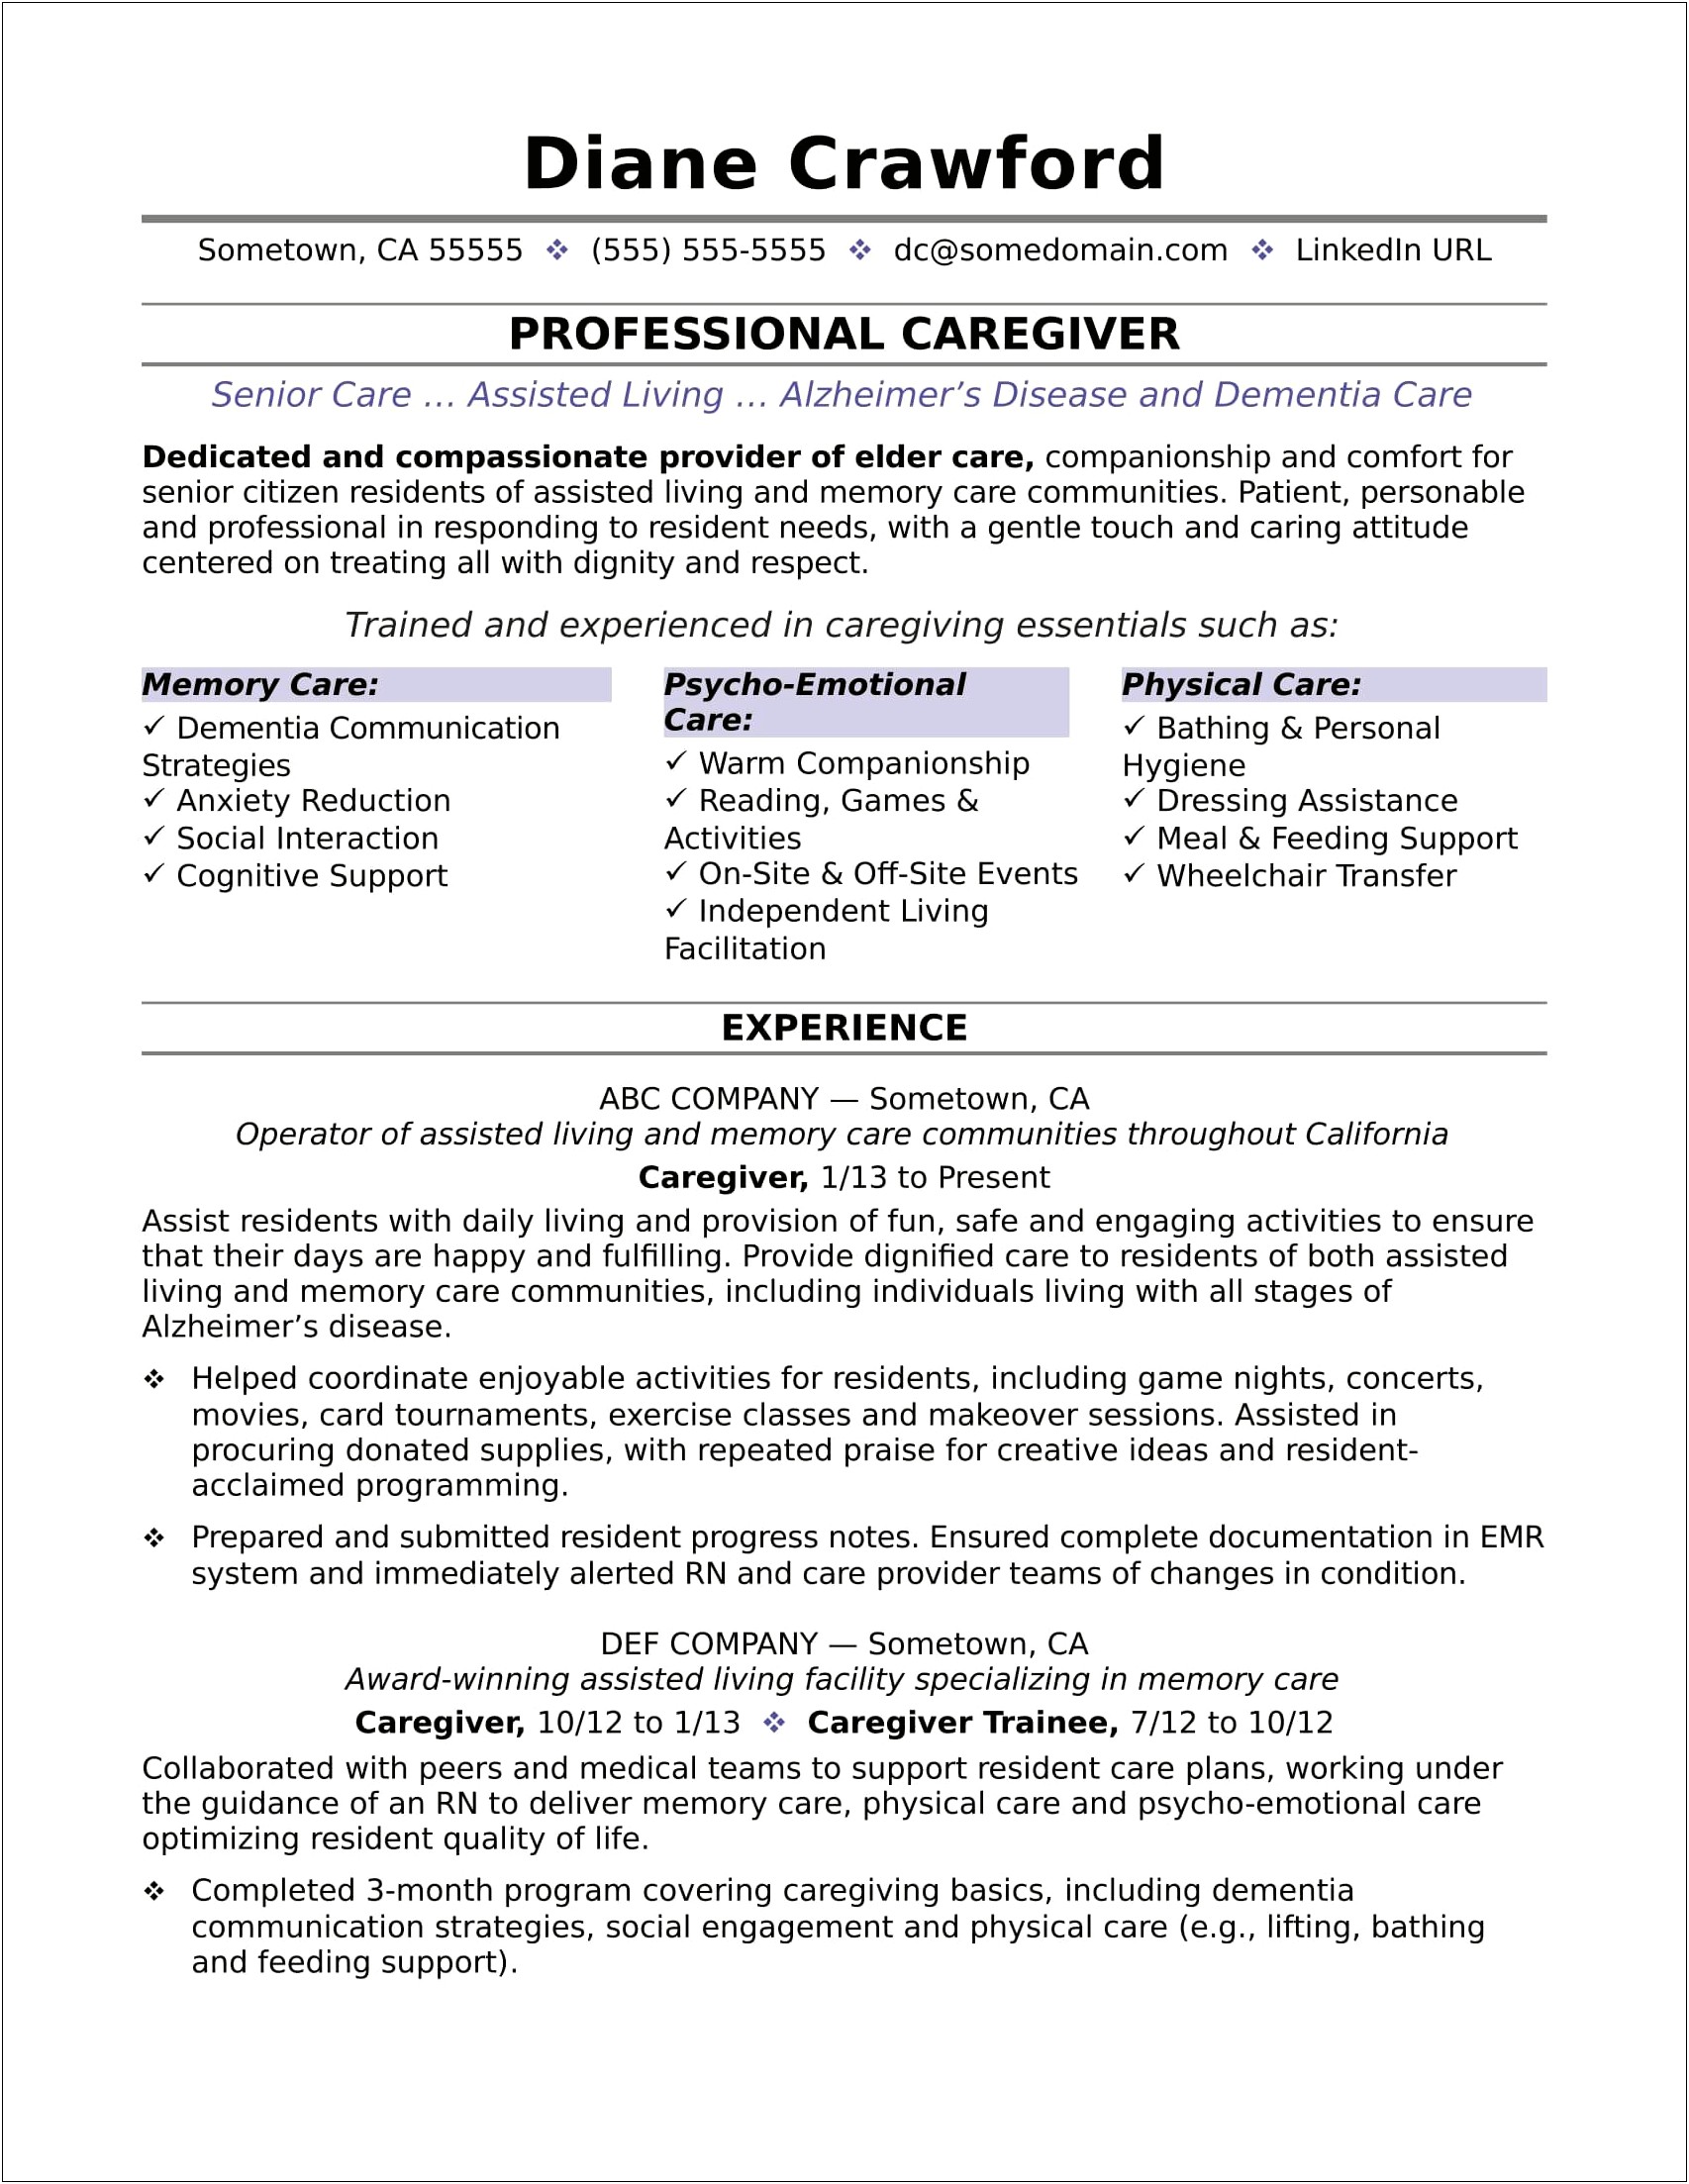 Resume For Home Health Rn Casemanager Job Skills